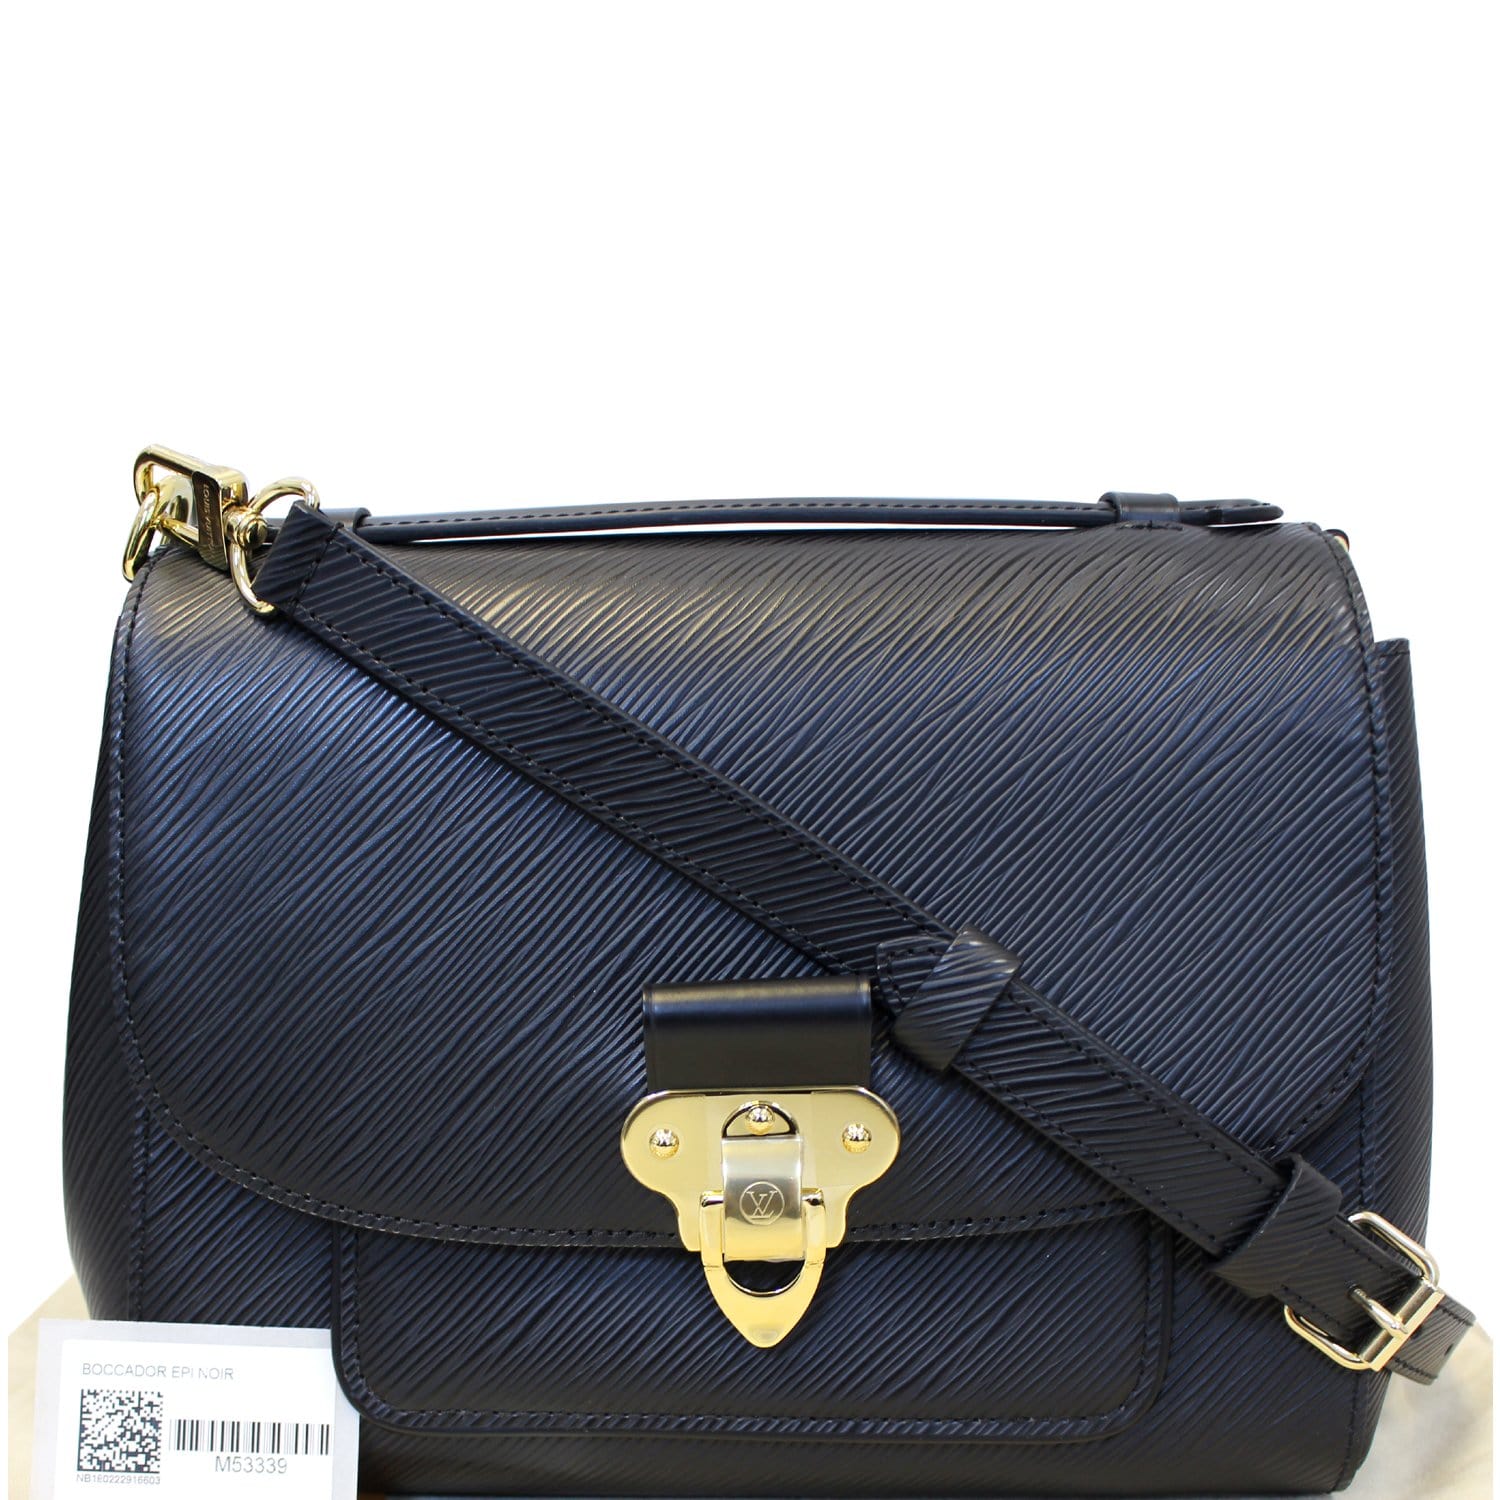 Replica Louis Vuitton Boccador Bag Epi Leather M53337 BLV203